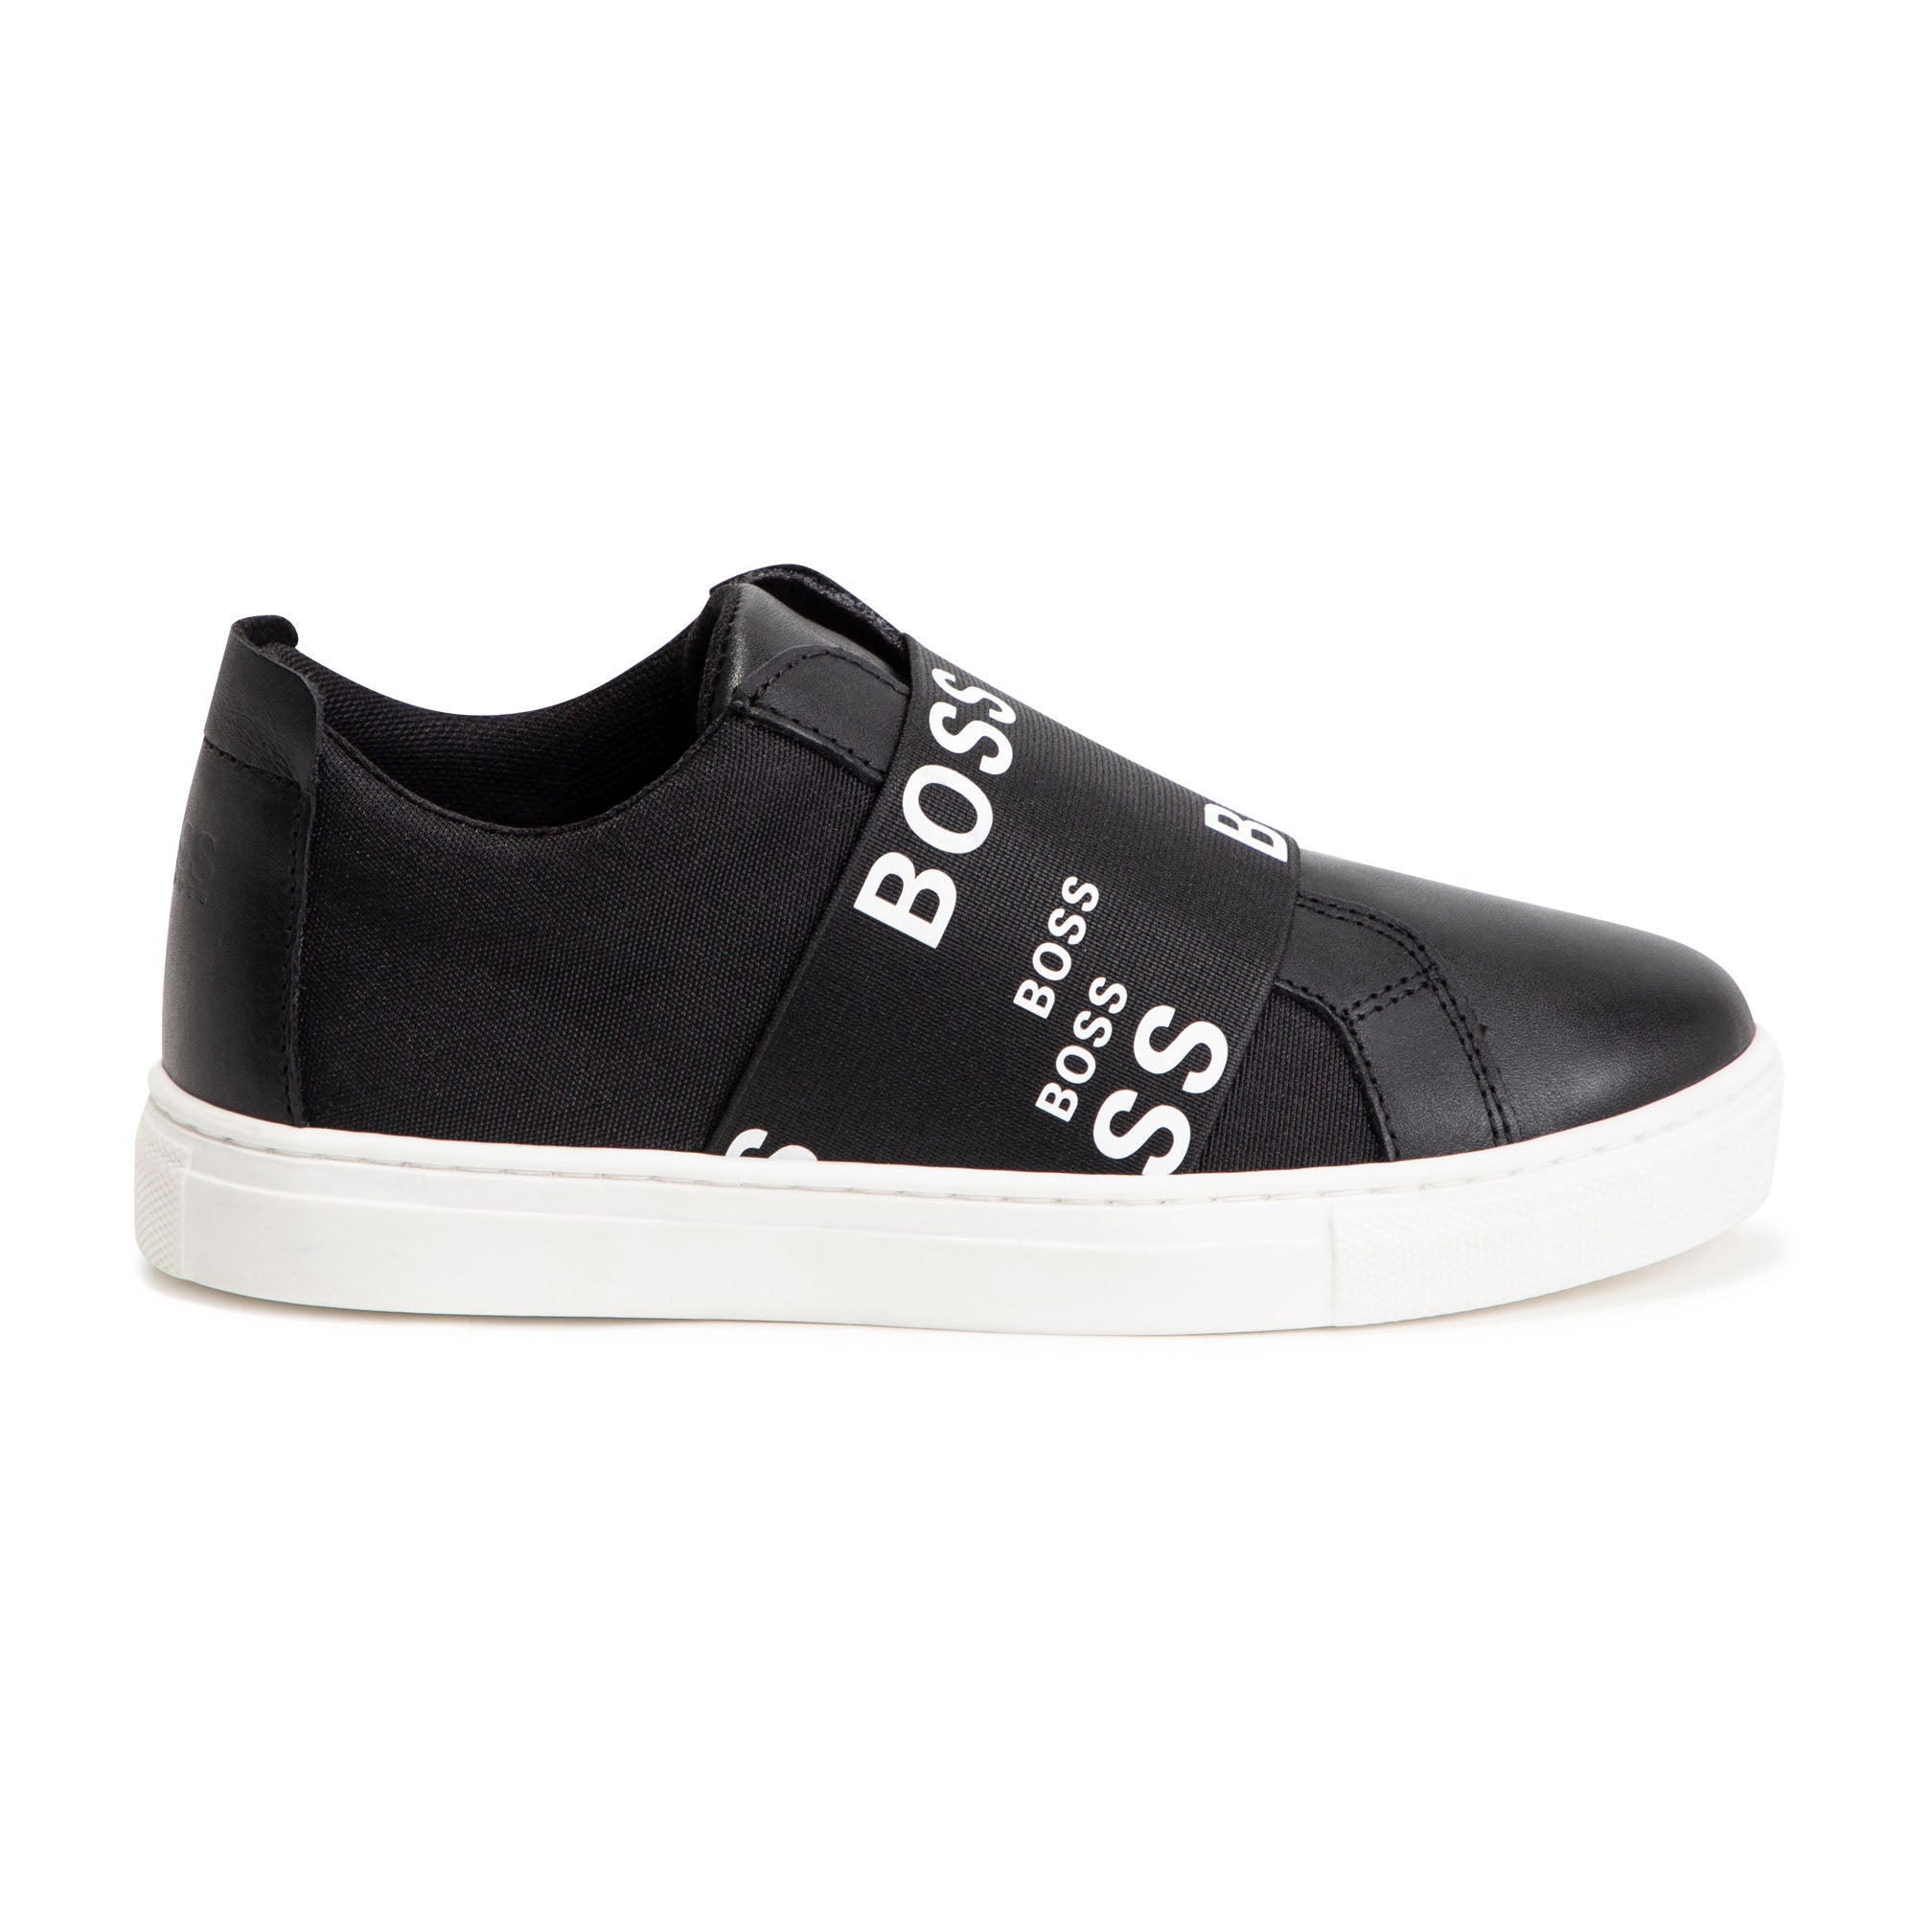 Hugo Boss Black Slip-On Sneakers